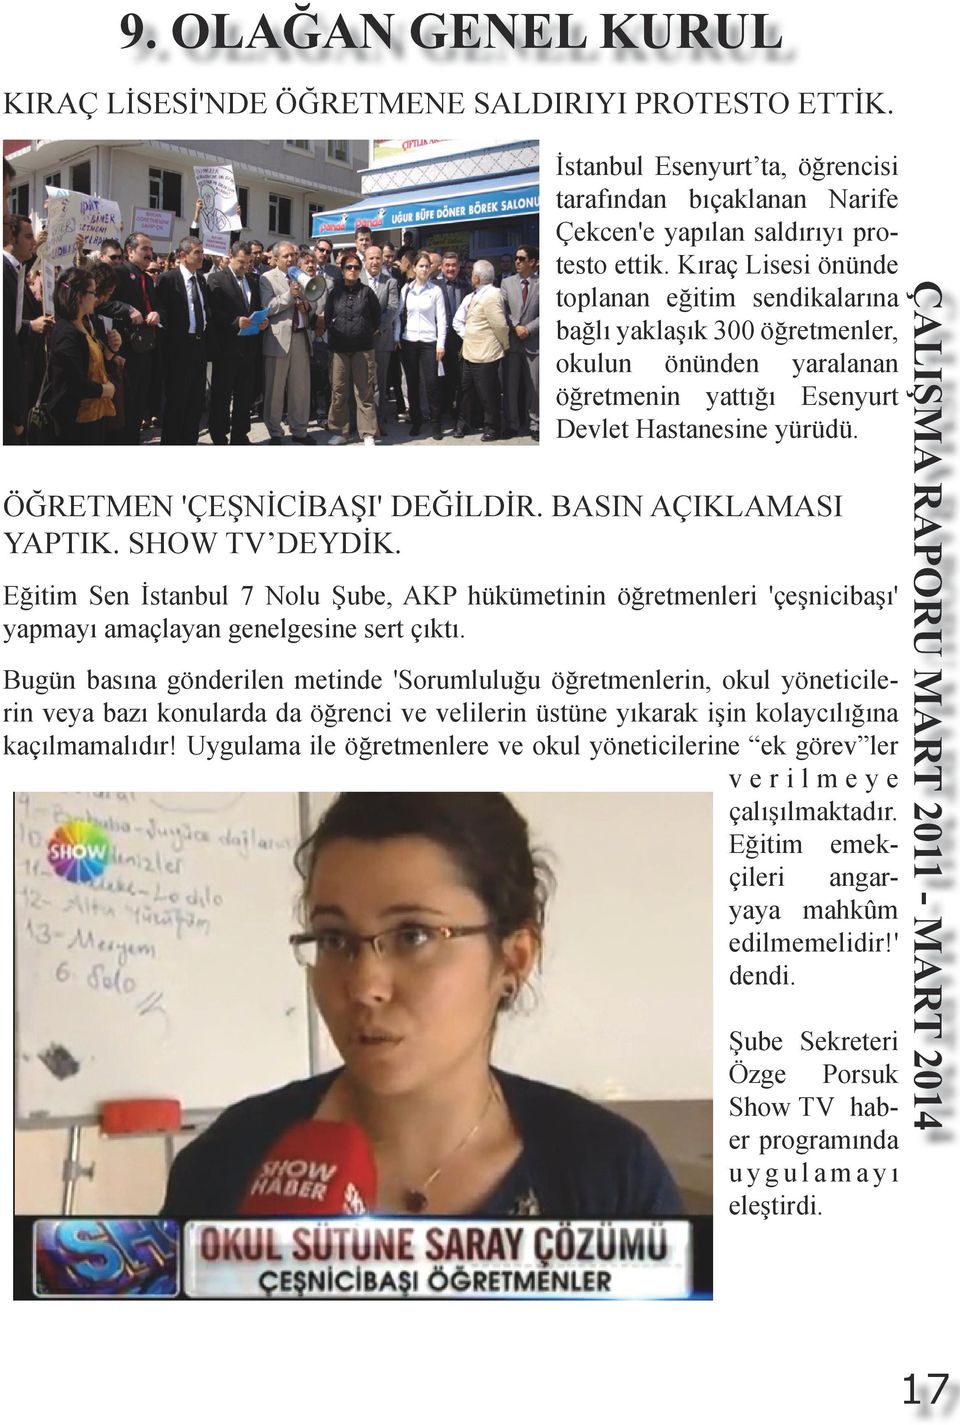 BASIN AÇIKLAMASI YAPTIK. SHOW TV DEYDİK. Eğitim Sen İstanbul 7 Nolu Şube, AKP hükümetinin öğretmenleri 'çeşnicibaşı' yapmayı amaçlayan genelgesine sert çıktı.